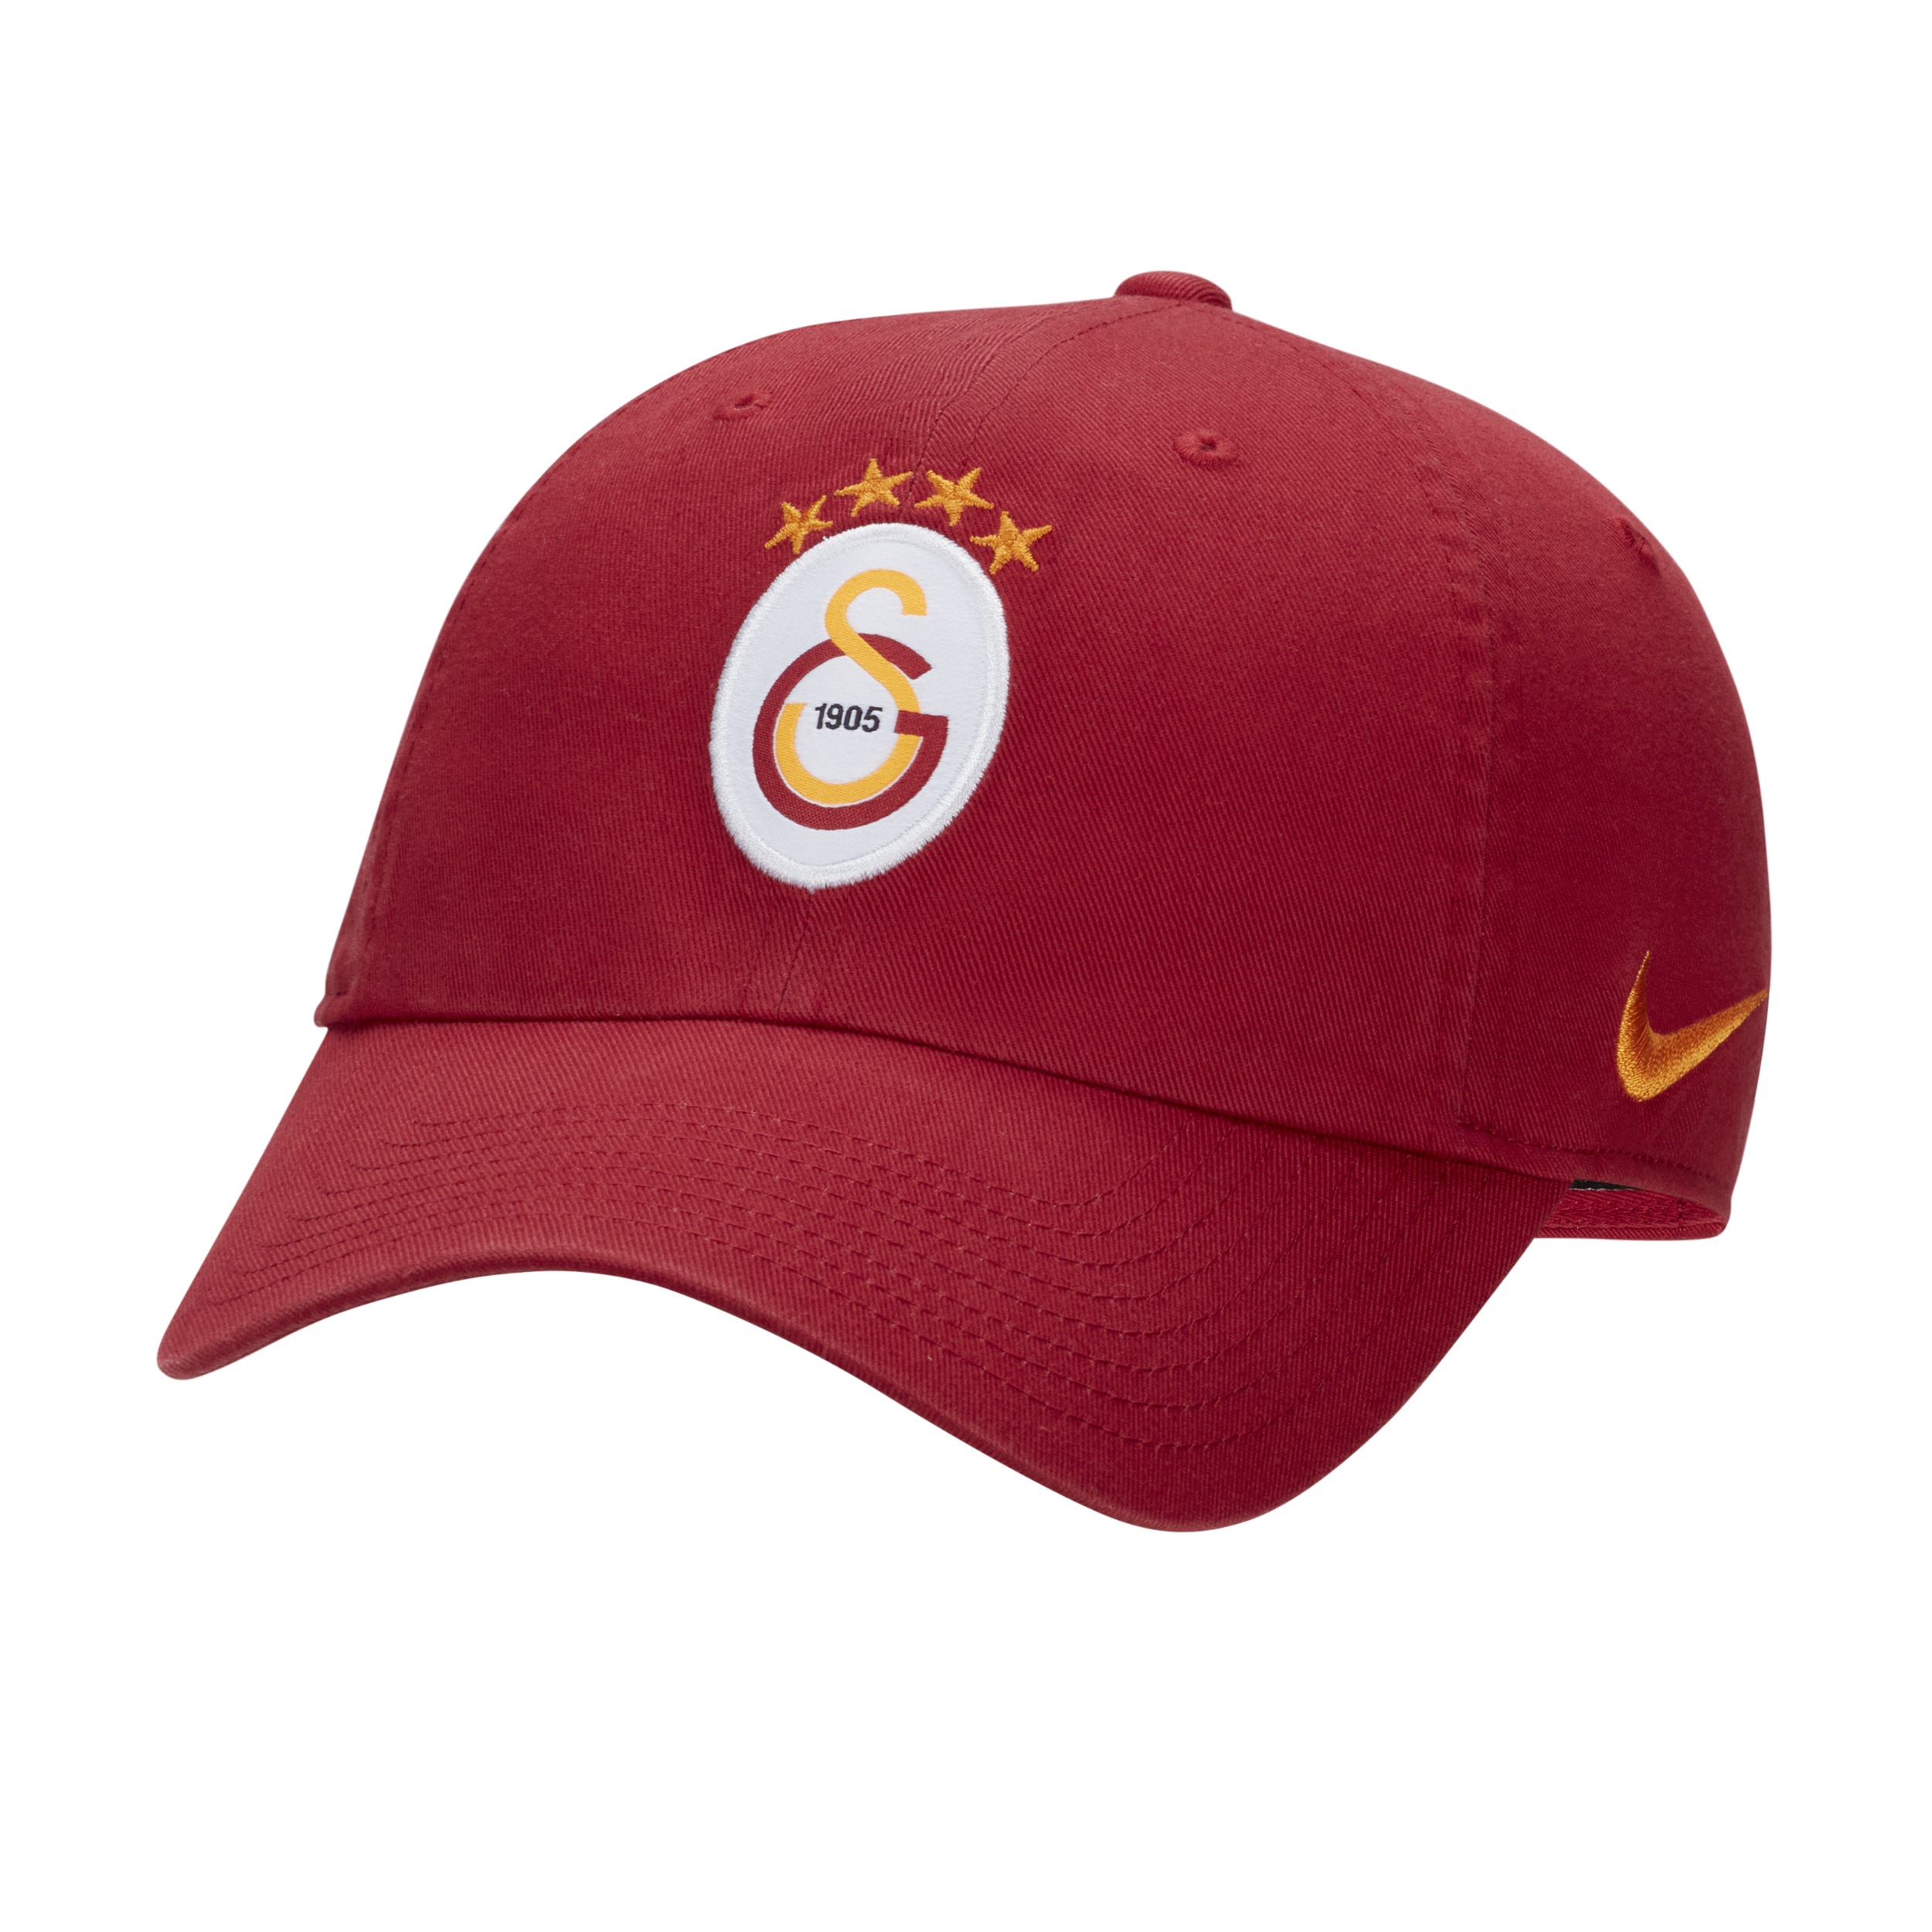 Button for Sale mit Galatasaray-Orange von VRedBaller